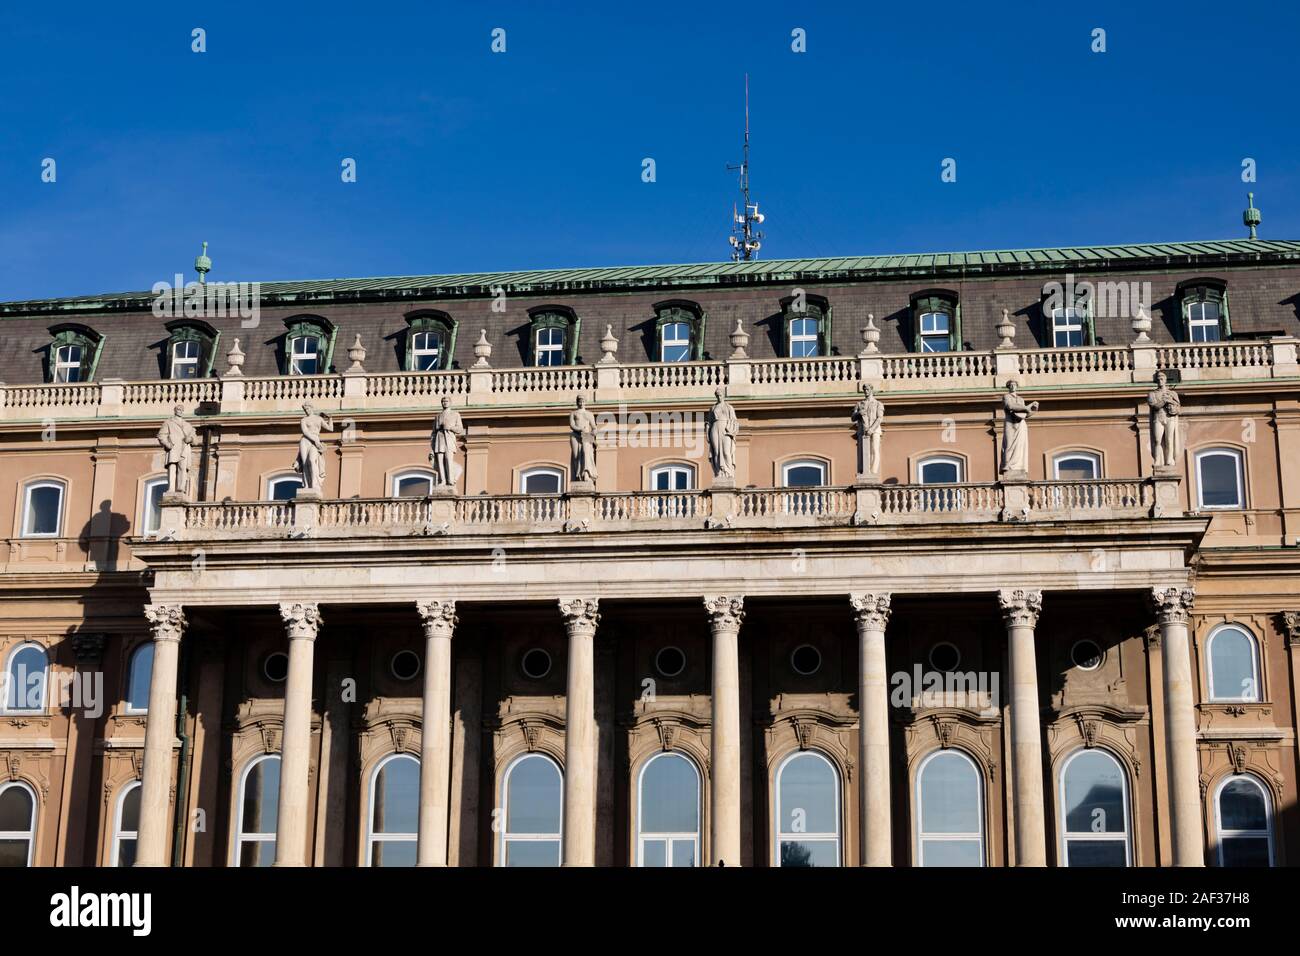 Bâtiment de la cour intérieure du château de Buda, détail, d'hiver à Budapest, Hongrie. Décembre 2019 Banque D'Images